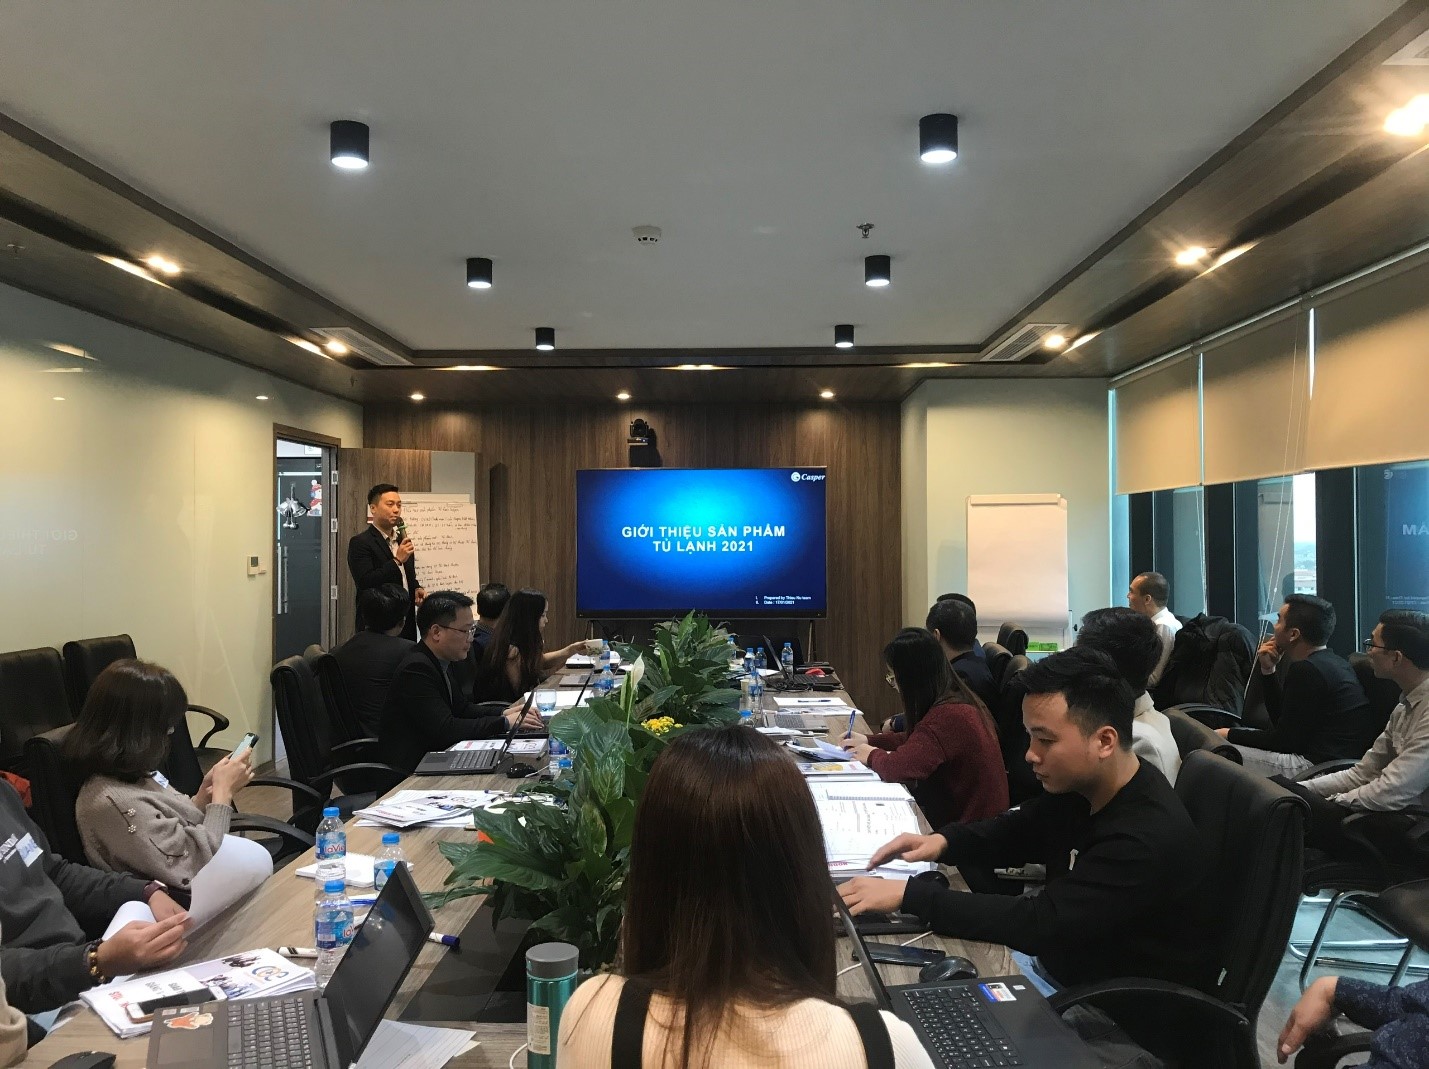 Khoá đào tạo Kỹ năng giảng viên nội bộ dành cho đội ngũ nhân sự Công ty Casper Việt Nam - khu vực Hà Nội đã được tổ chức tại COE Việt Nam.